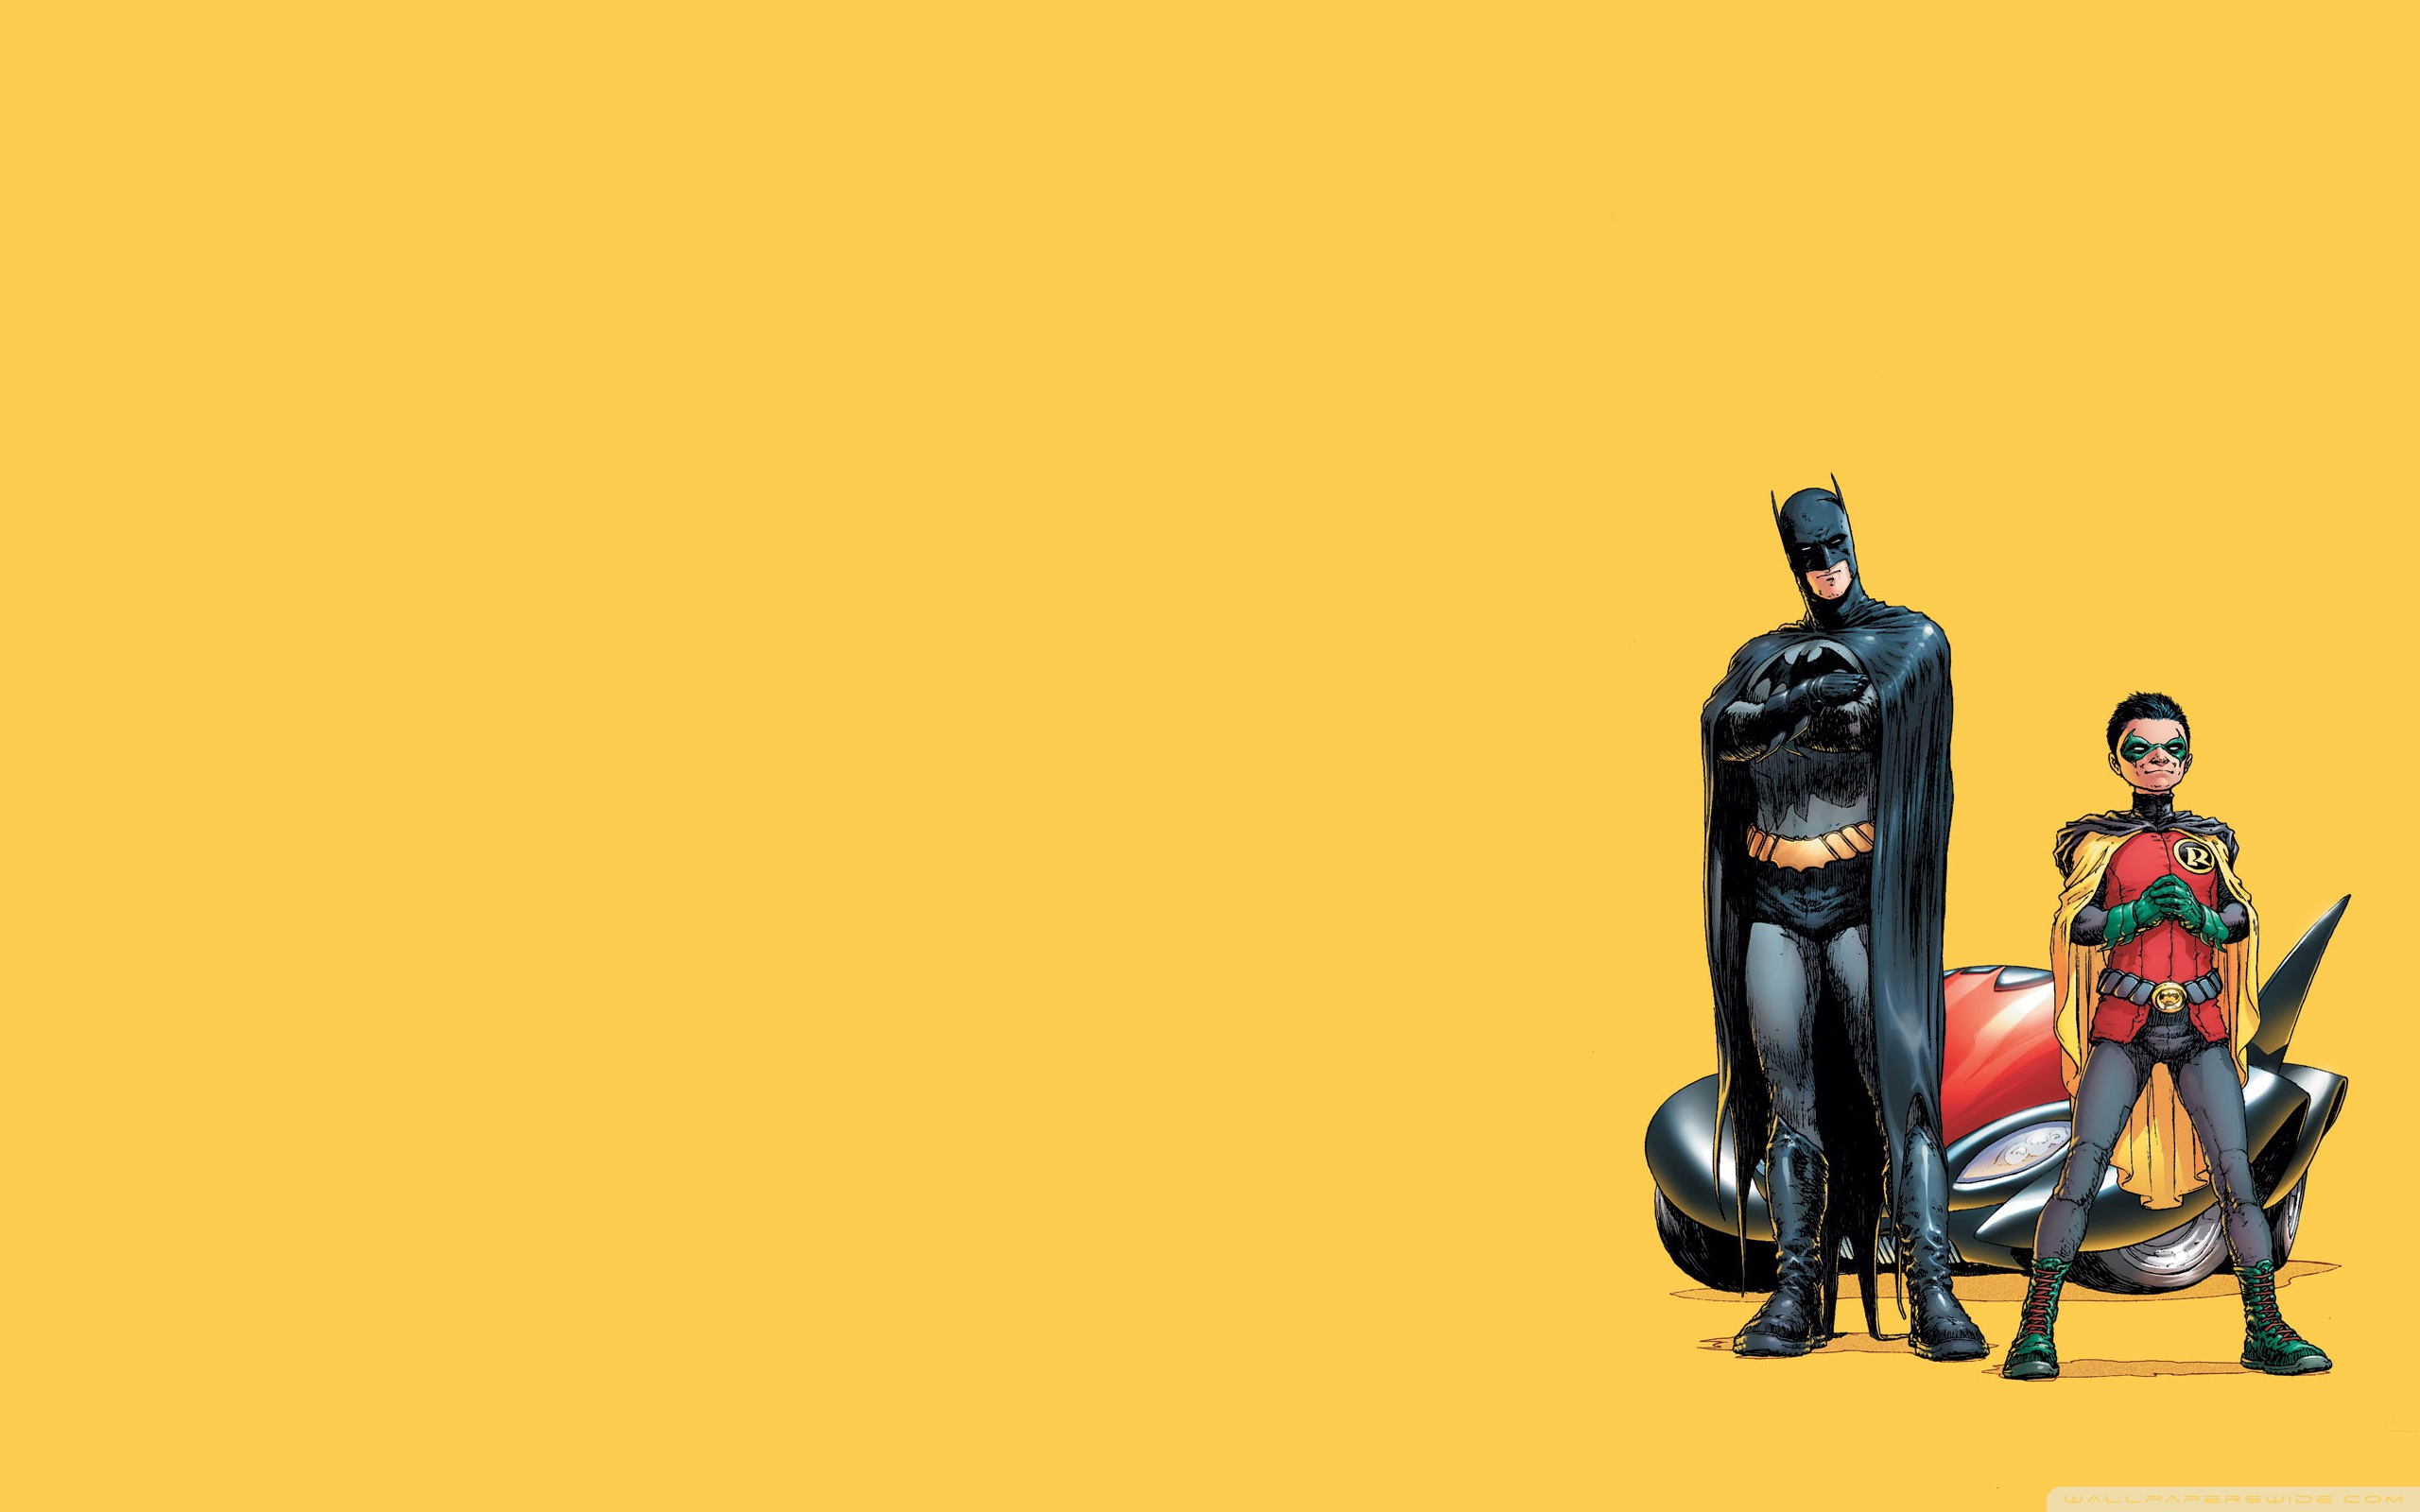 Batman And Robin Cartoon Wallpaper Full HD 2560x1600 - Free